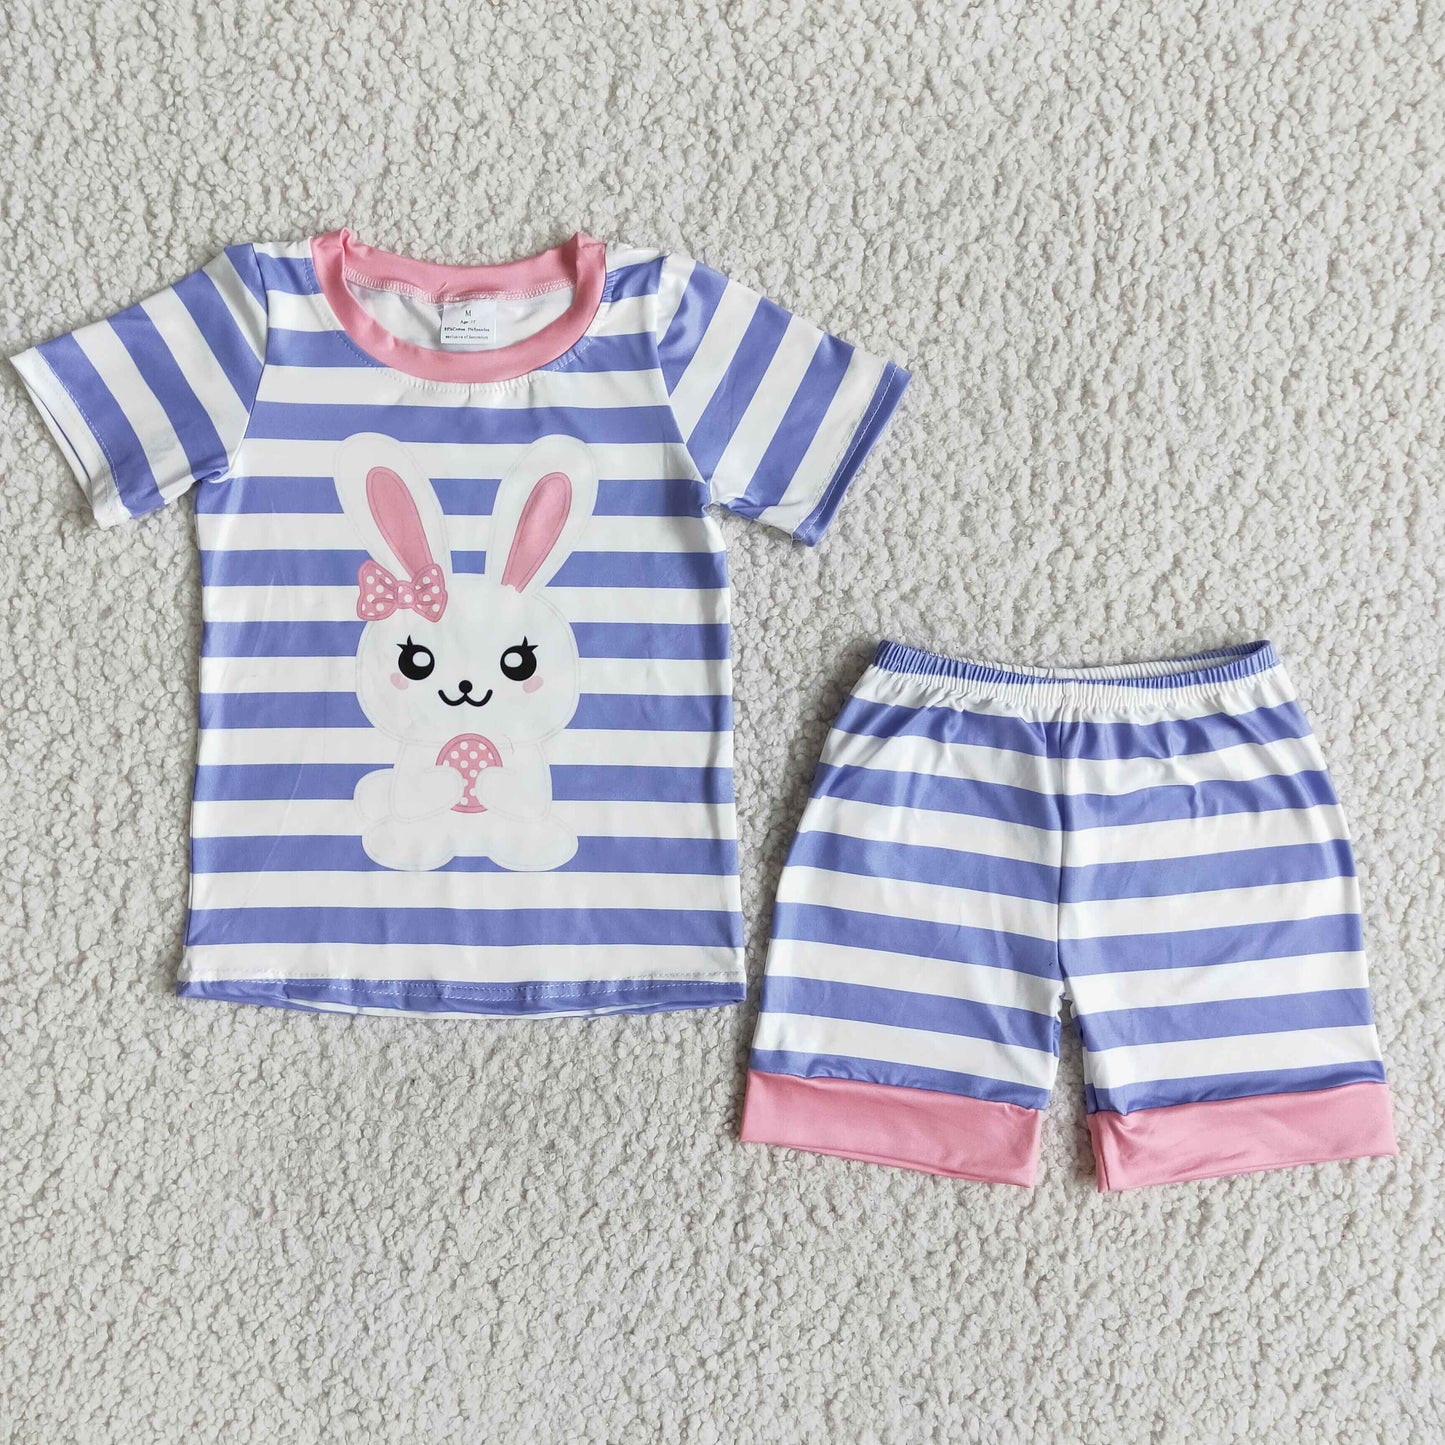 Baby Boy Easter Clothes Cute Fake Pocket Shorts Pajamas